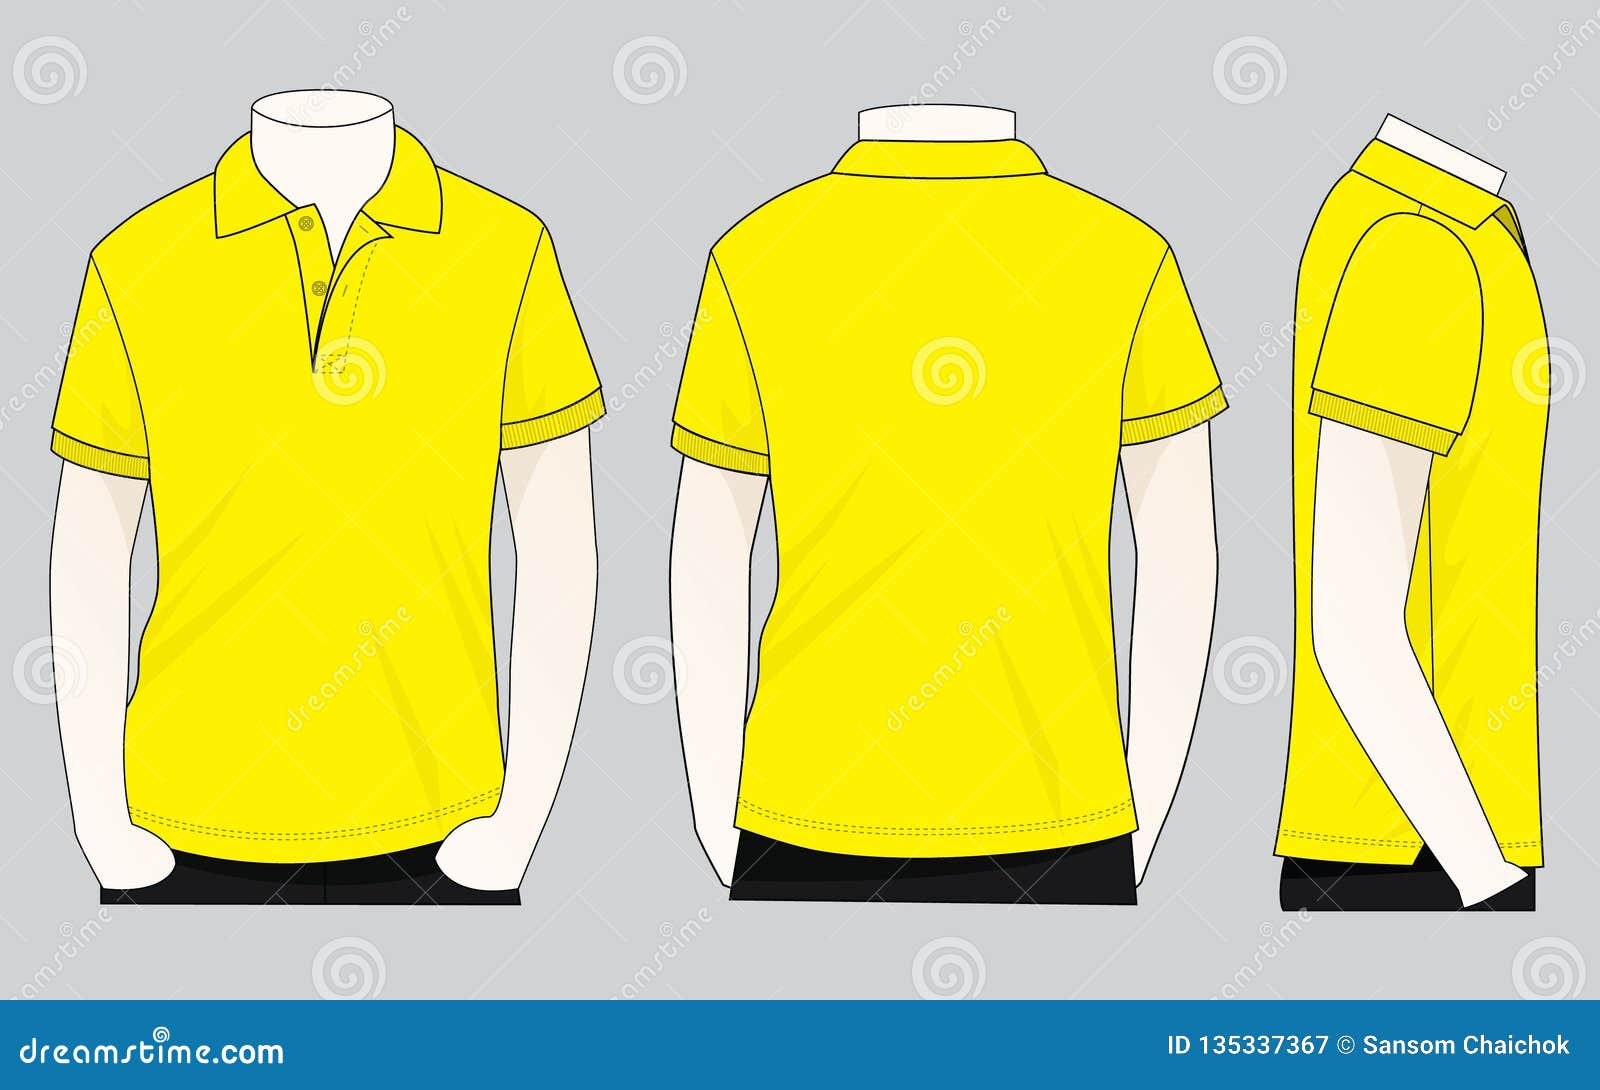 men-s-yellow-short-sleeves-polo-shirt-template-vector-stock